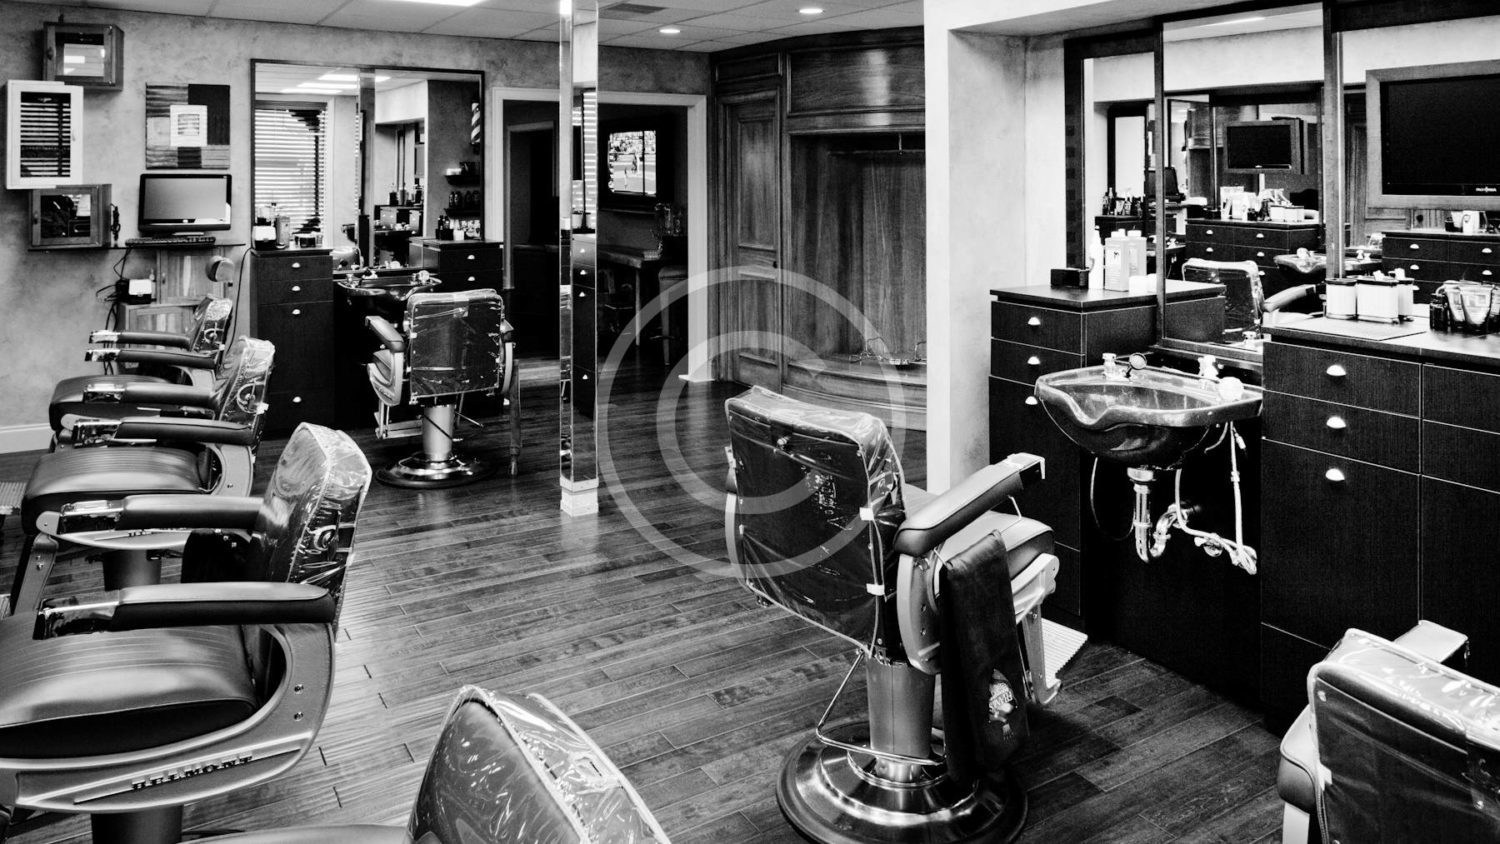 Franks-Barber-Shop-3-1500x844.jpg">